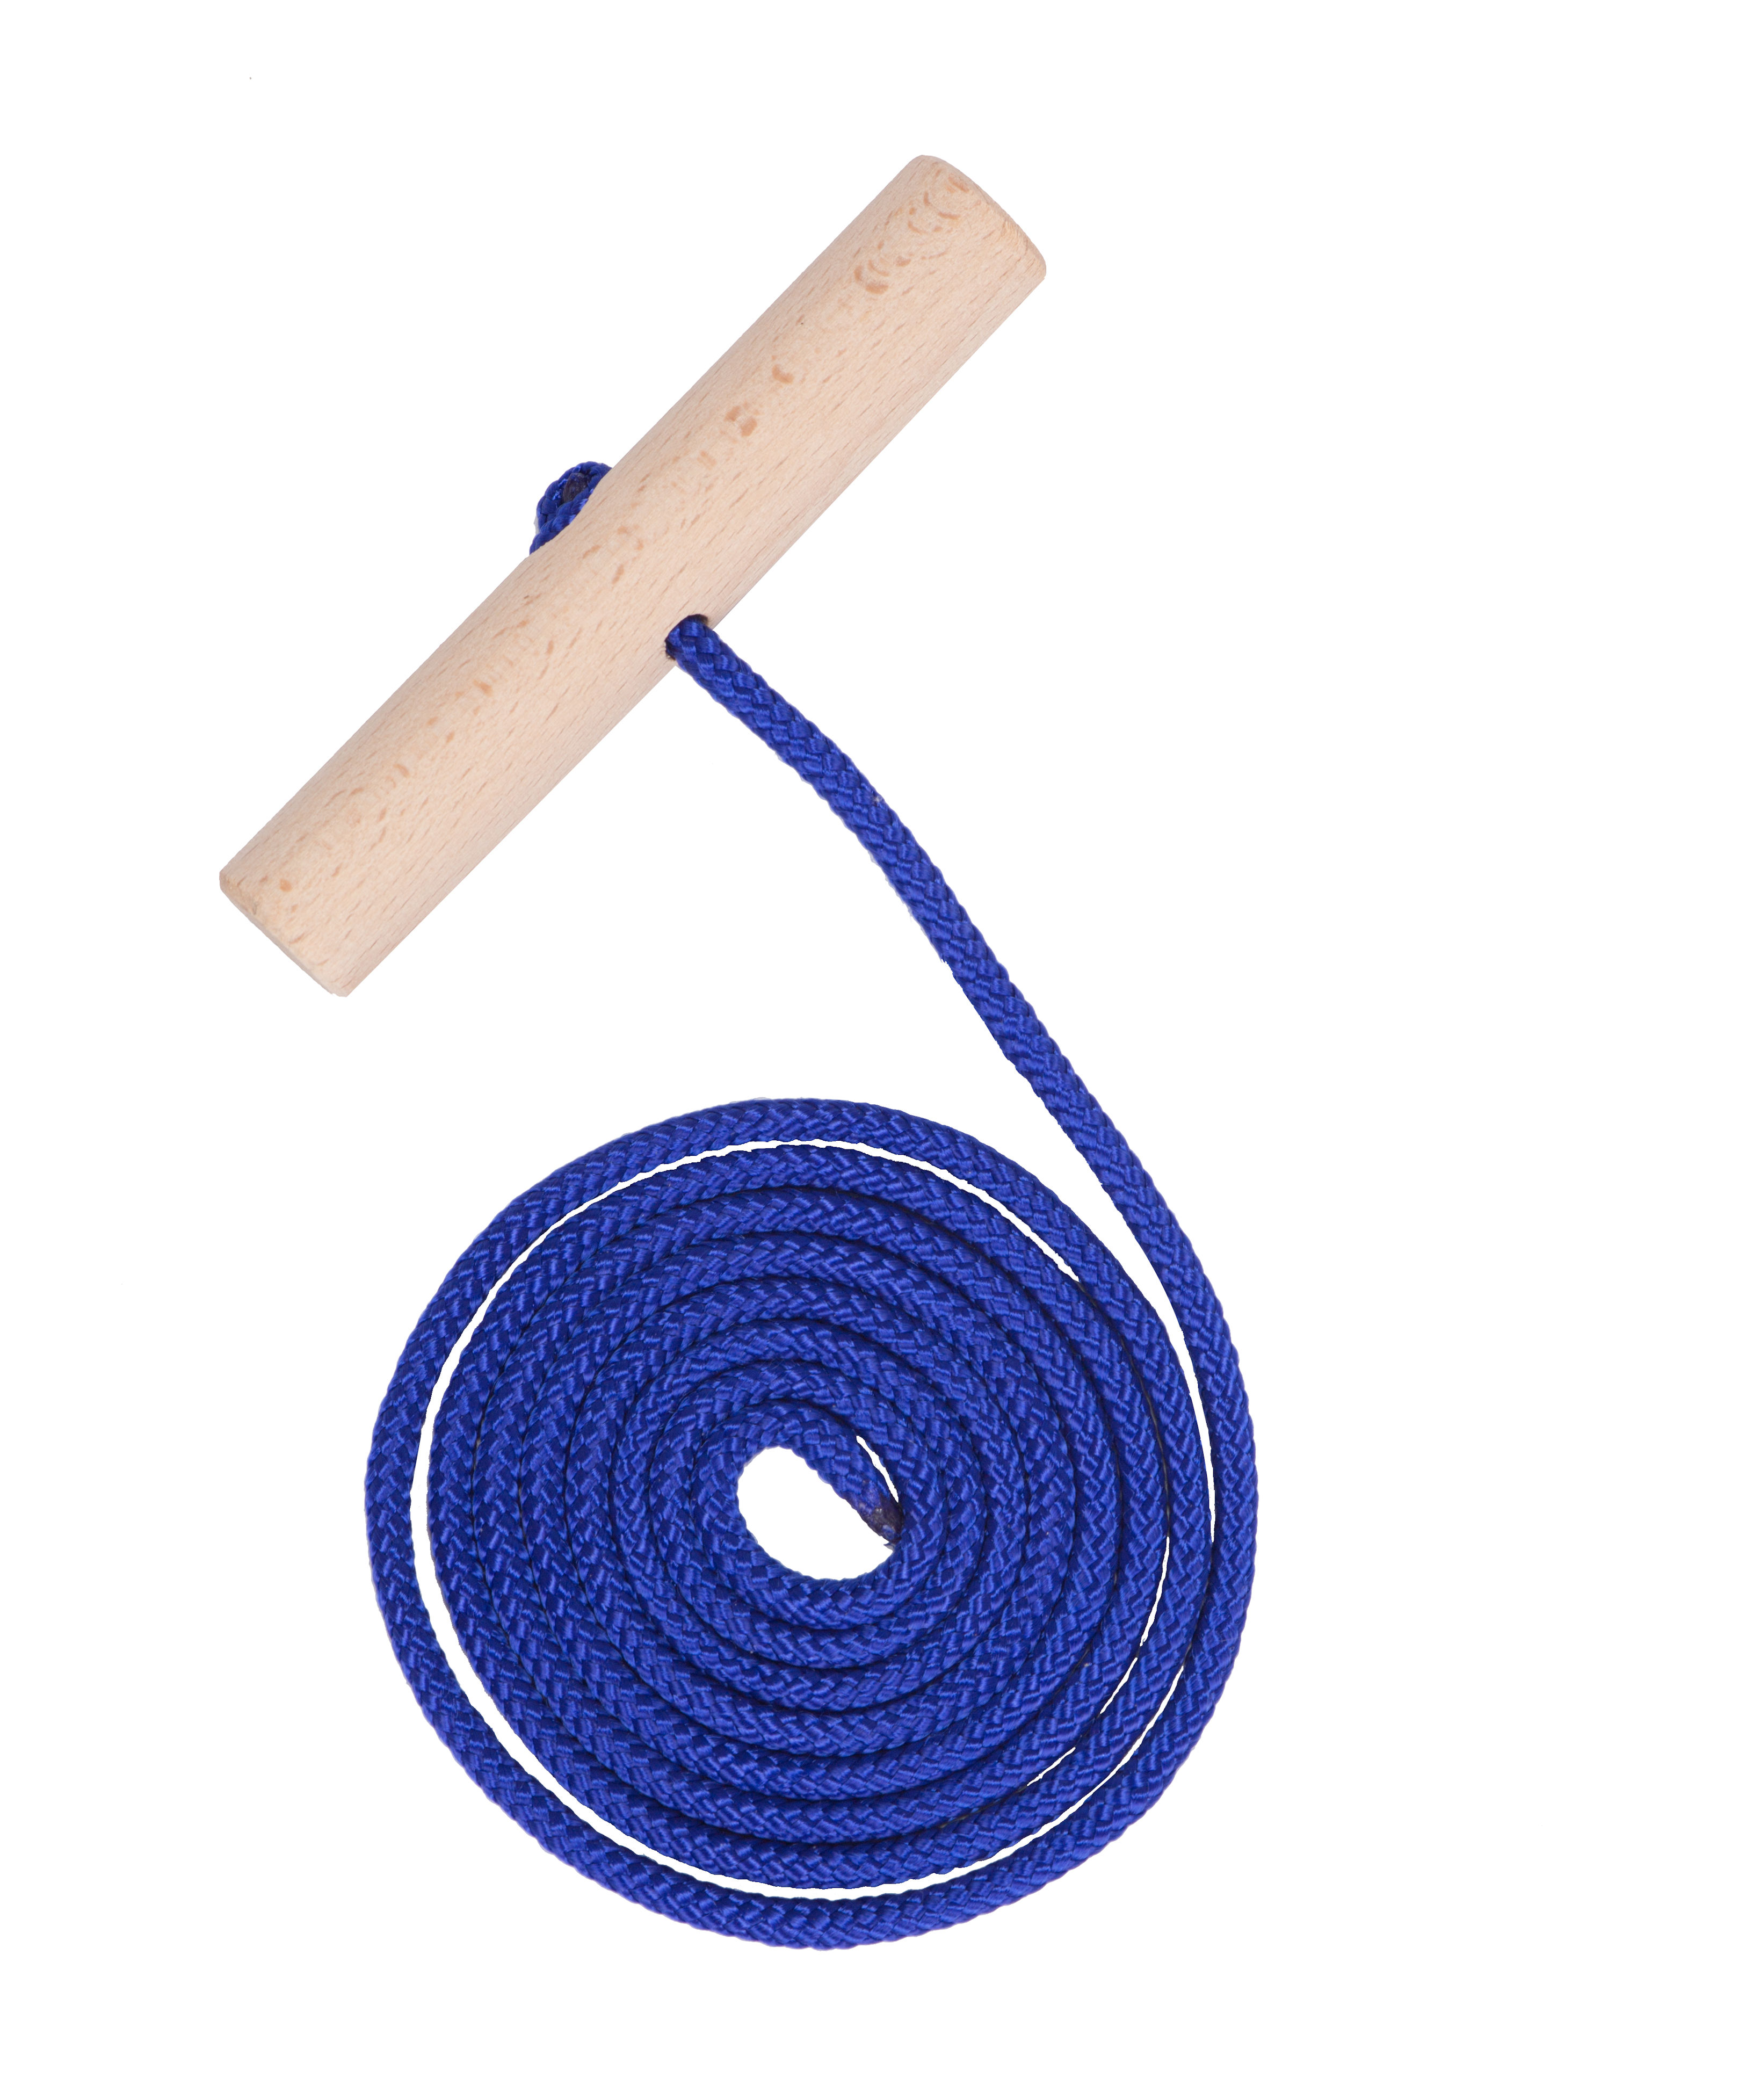 CLOINT Schlitten Zugseil mit Holz Griff - 160 cm - Zugleine in blau für Rodelschlitten und Bobs